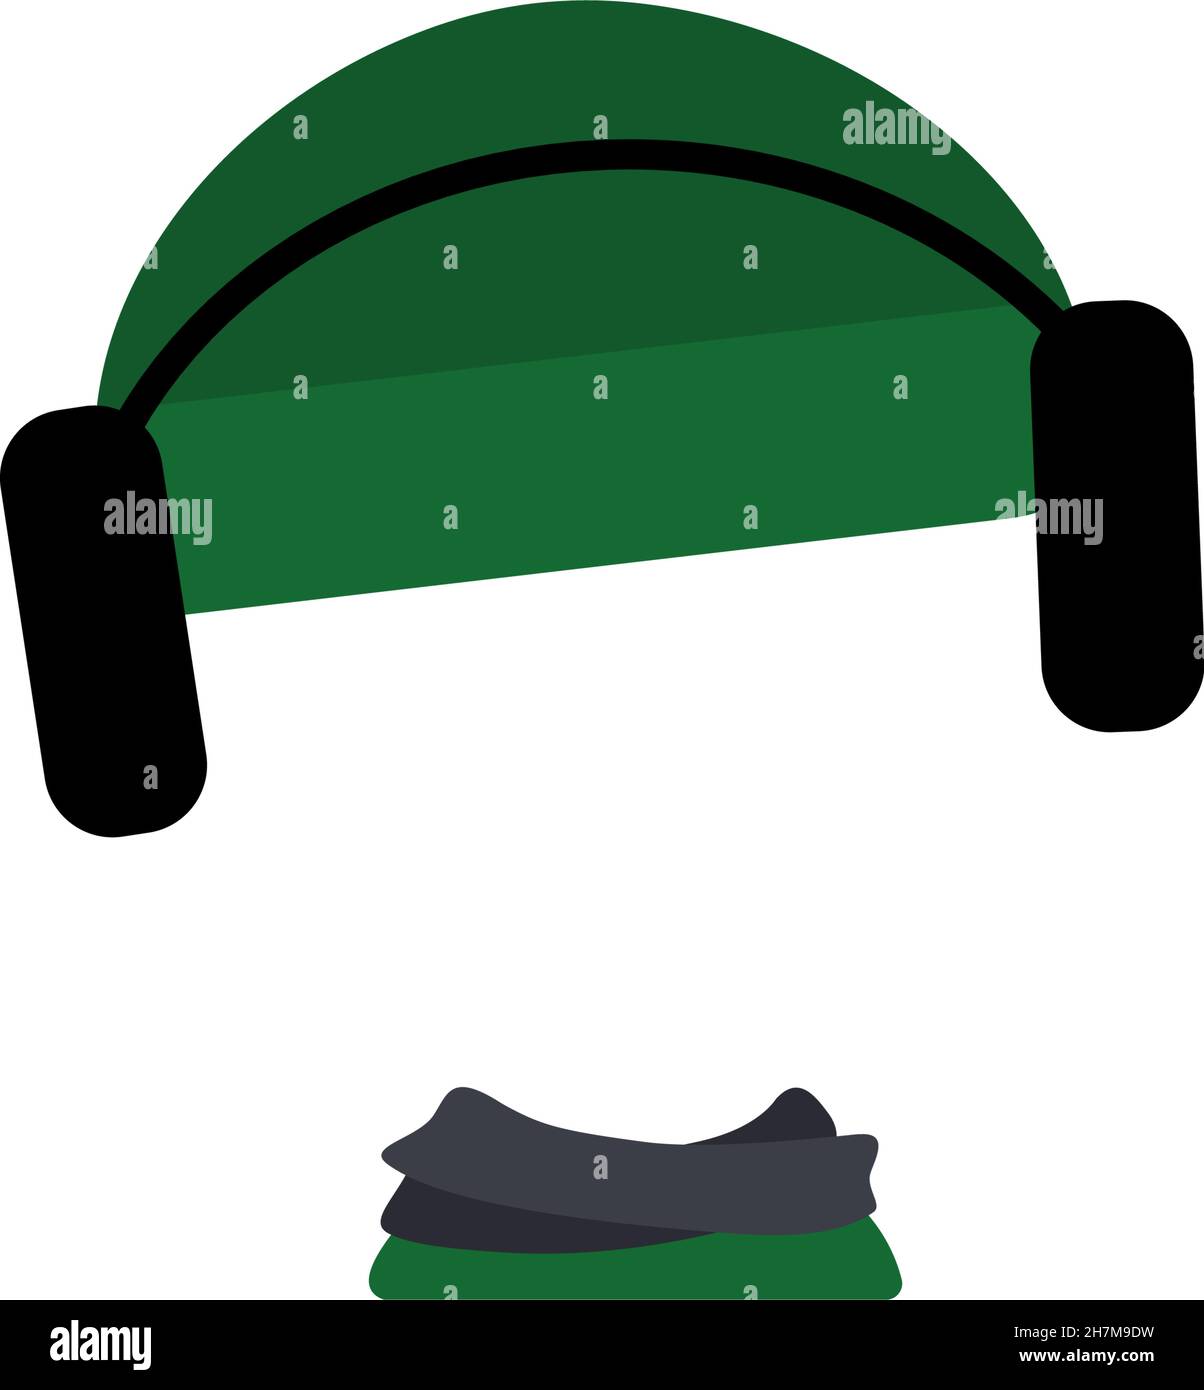 Strickmütze mit Kopfhörer und Schal für die kalte Jahreszeit. Schablone oder Rahmen für Kopf. Kopfschmuck, Kleidungsstück, Zubehör für Kinder. Vektorgrafik flach Stock Vektor